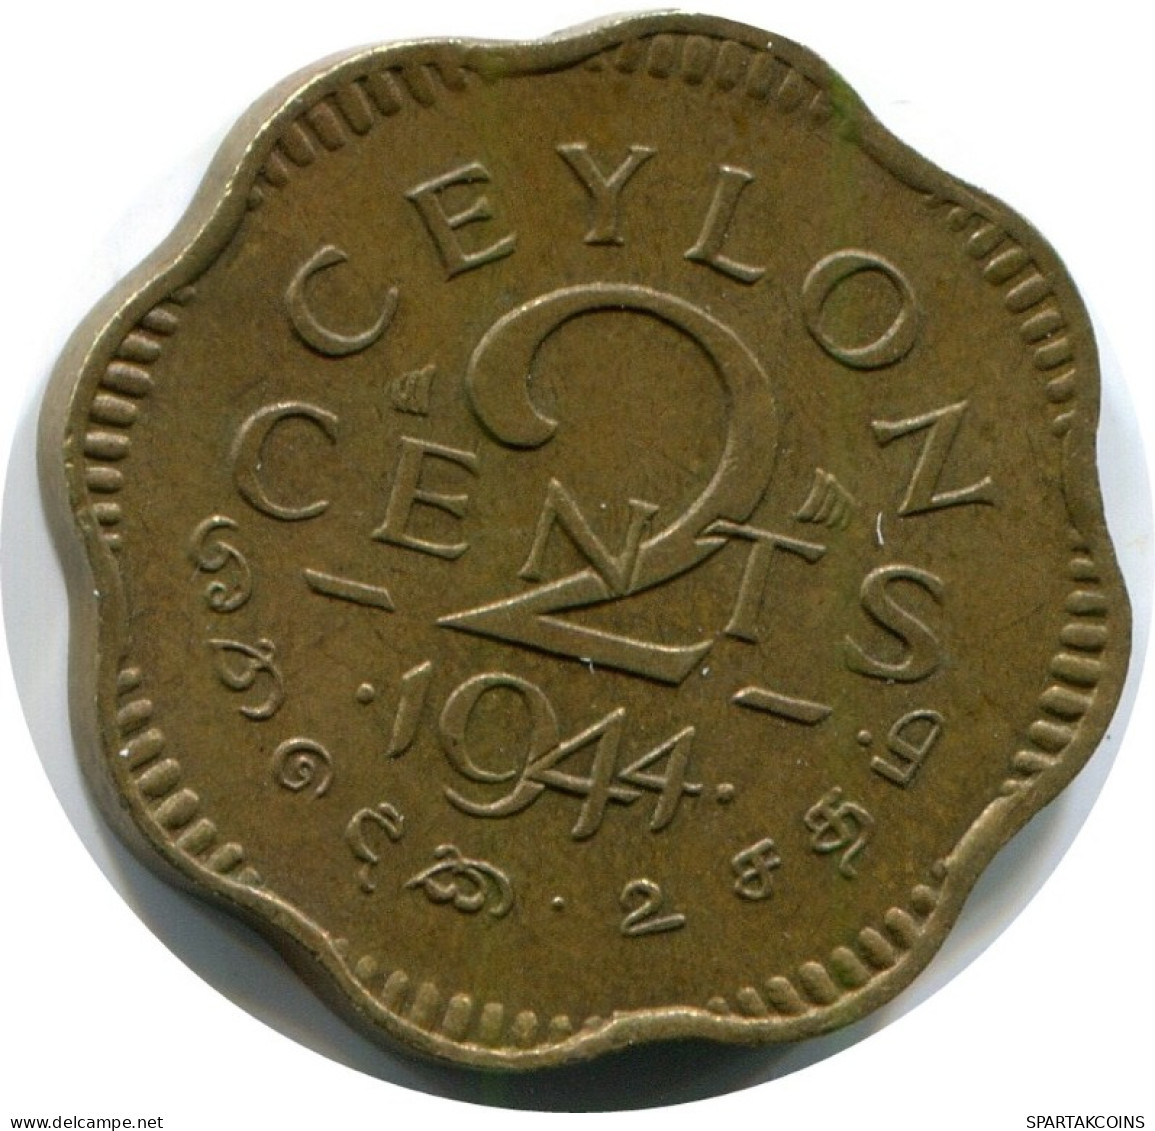 2 CENTS 1944 CEYLON Coin #AH688.3.U.A - Morocco